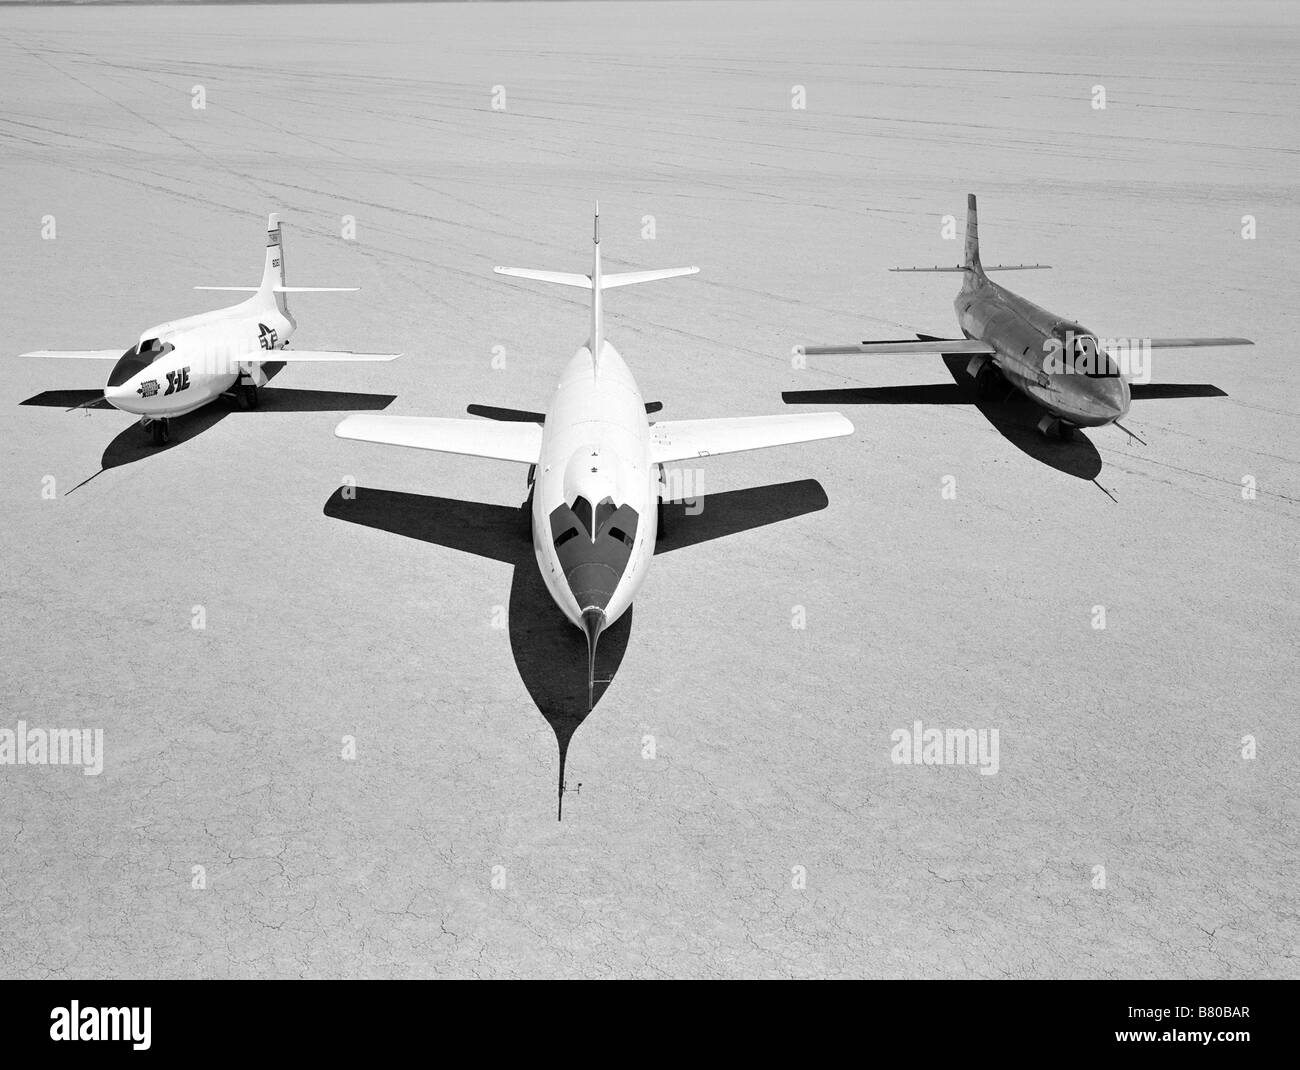 Frühe NACA-Forschungsflugzeug auf den Gewässergrund in der hohen Geschwindigkeit Forschungsstation im Jahr 1955: von links nach rechts: X-1E, D-558-II, X-1 b Stockfoto